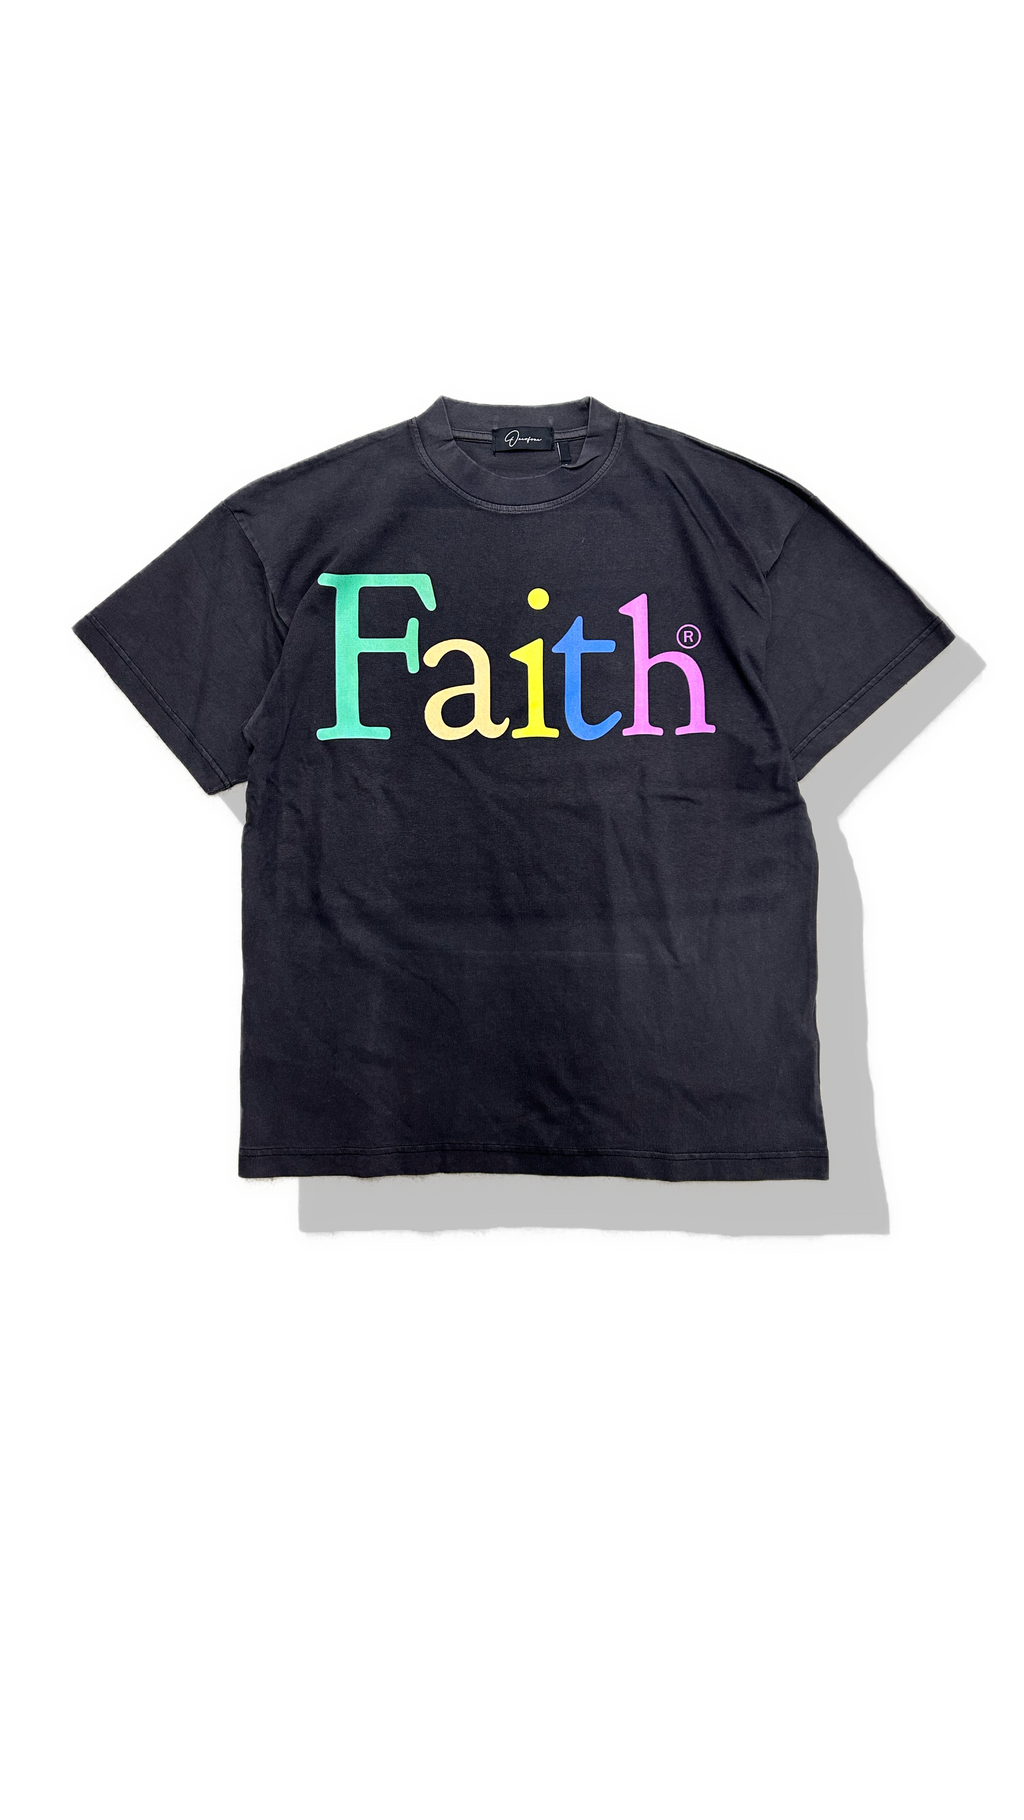 Faith tech shirt